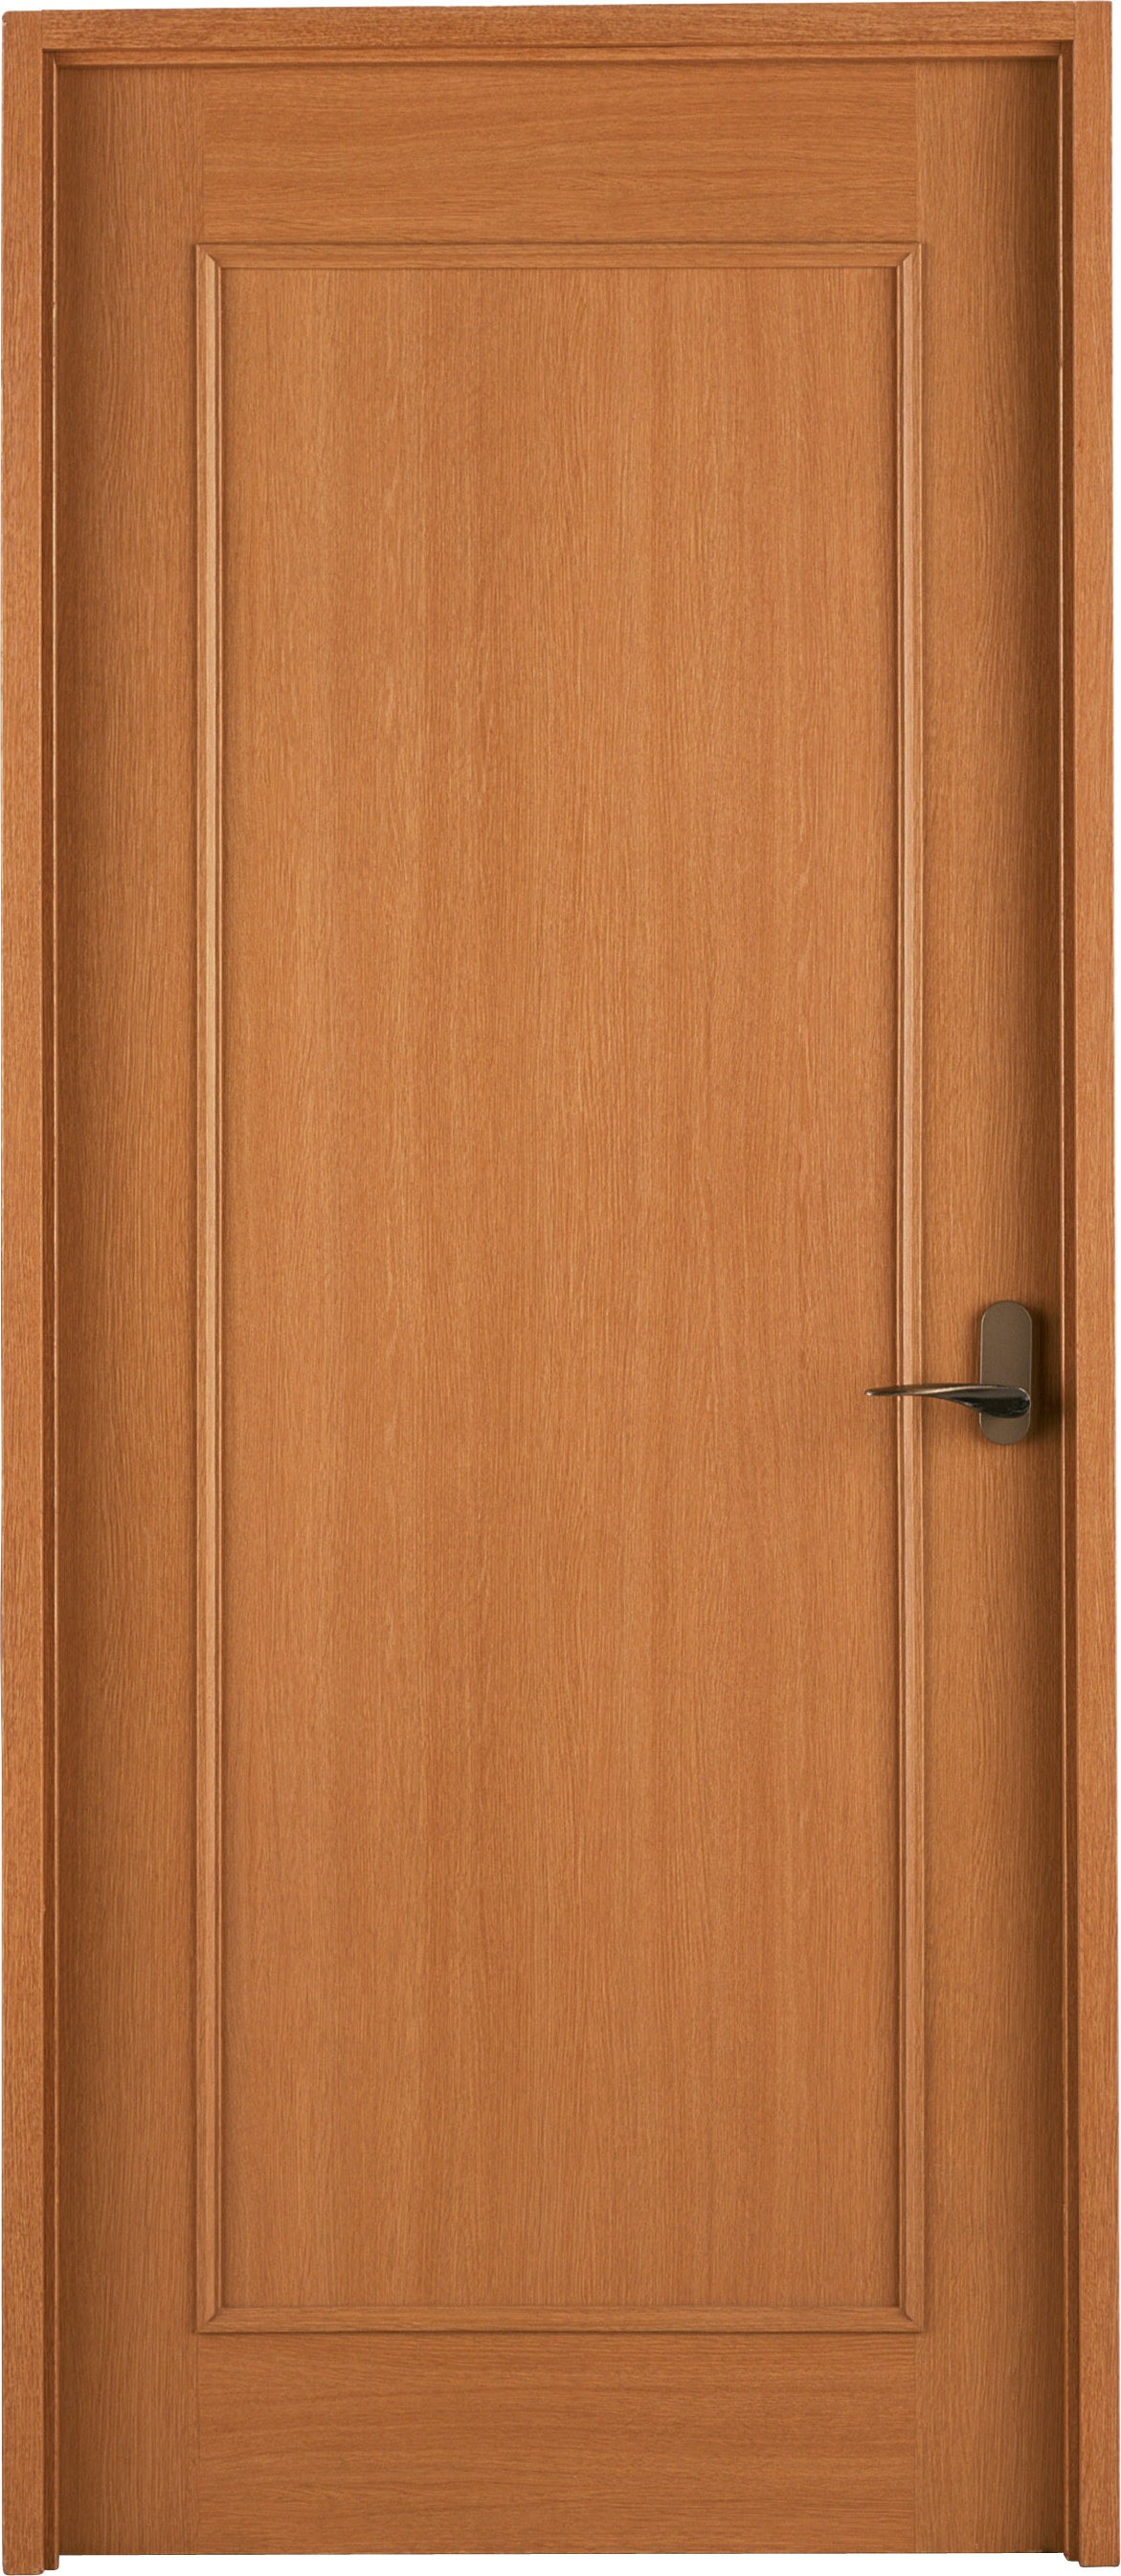 Exterieur houten deur PNG Transparant Beeld